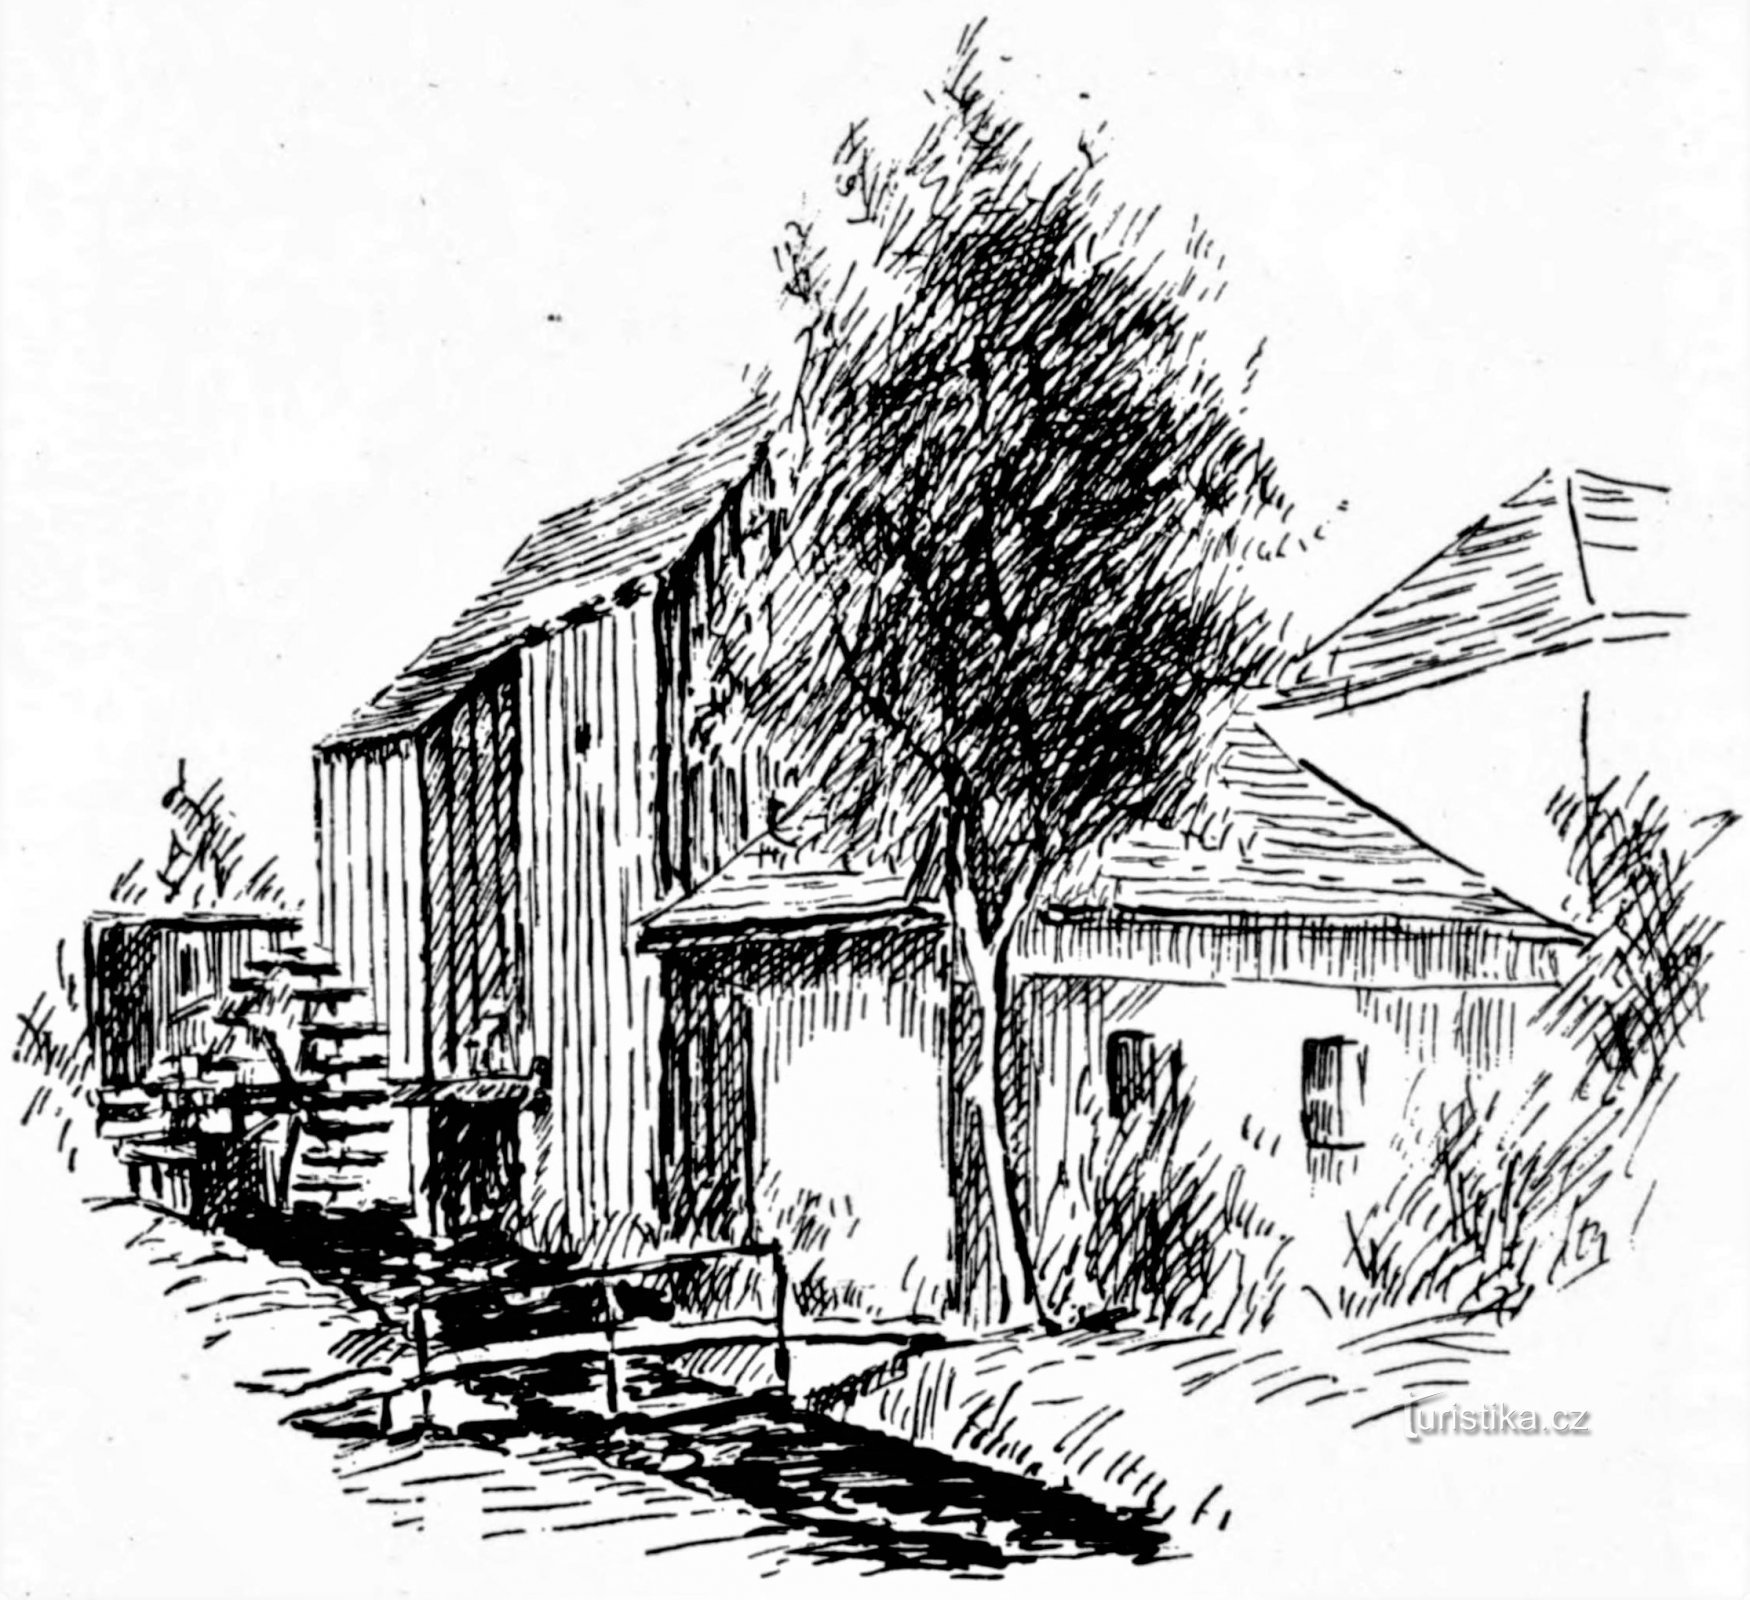 Valcha Mill 在一幅时期的图画上 (Plácky)